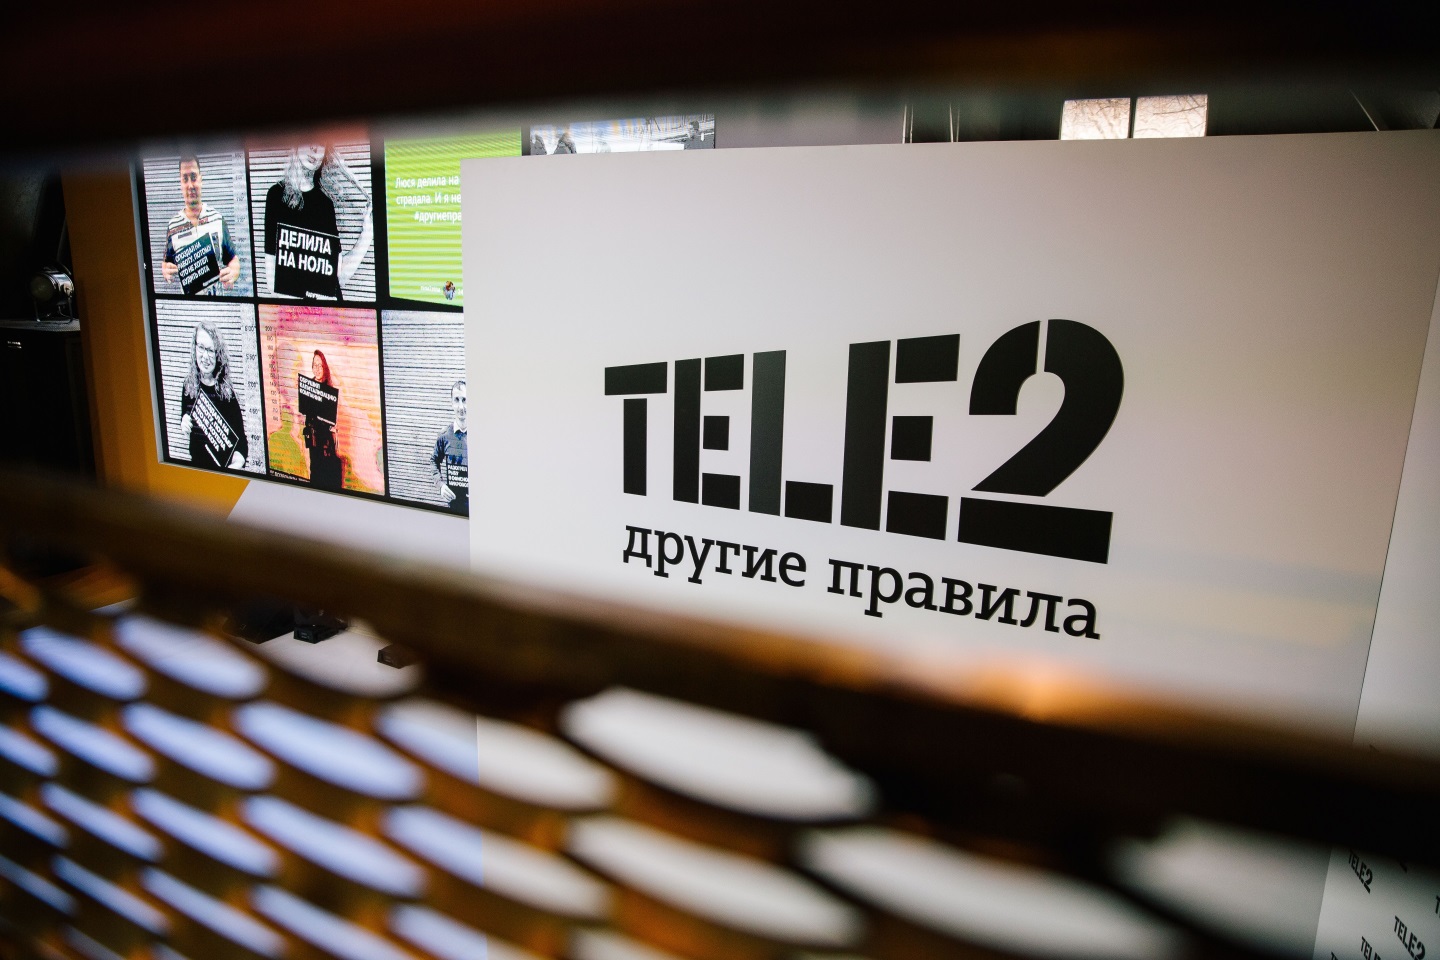 Теле 2 библиотека. Tele2 логотип. Теле2 другие правила логотип. Теле2 фон. Теле2 ребрендинг.